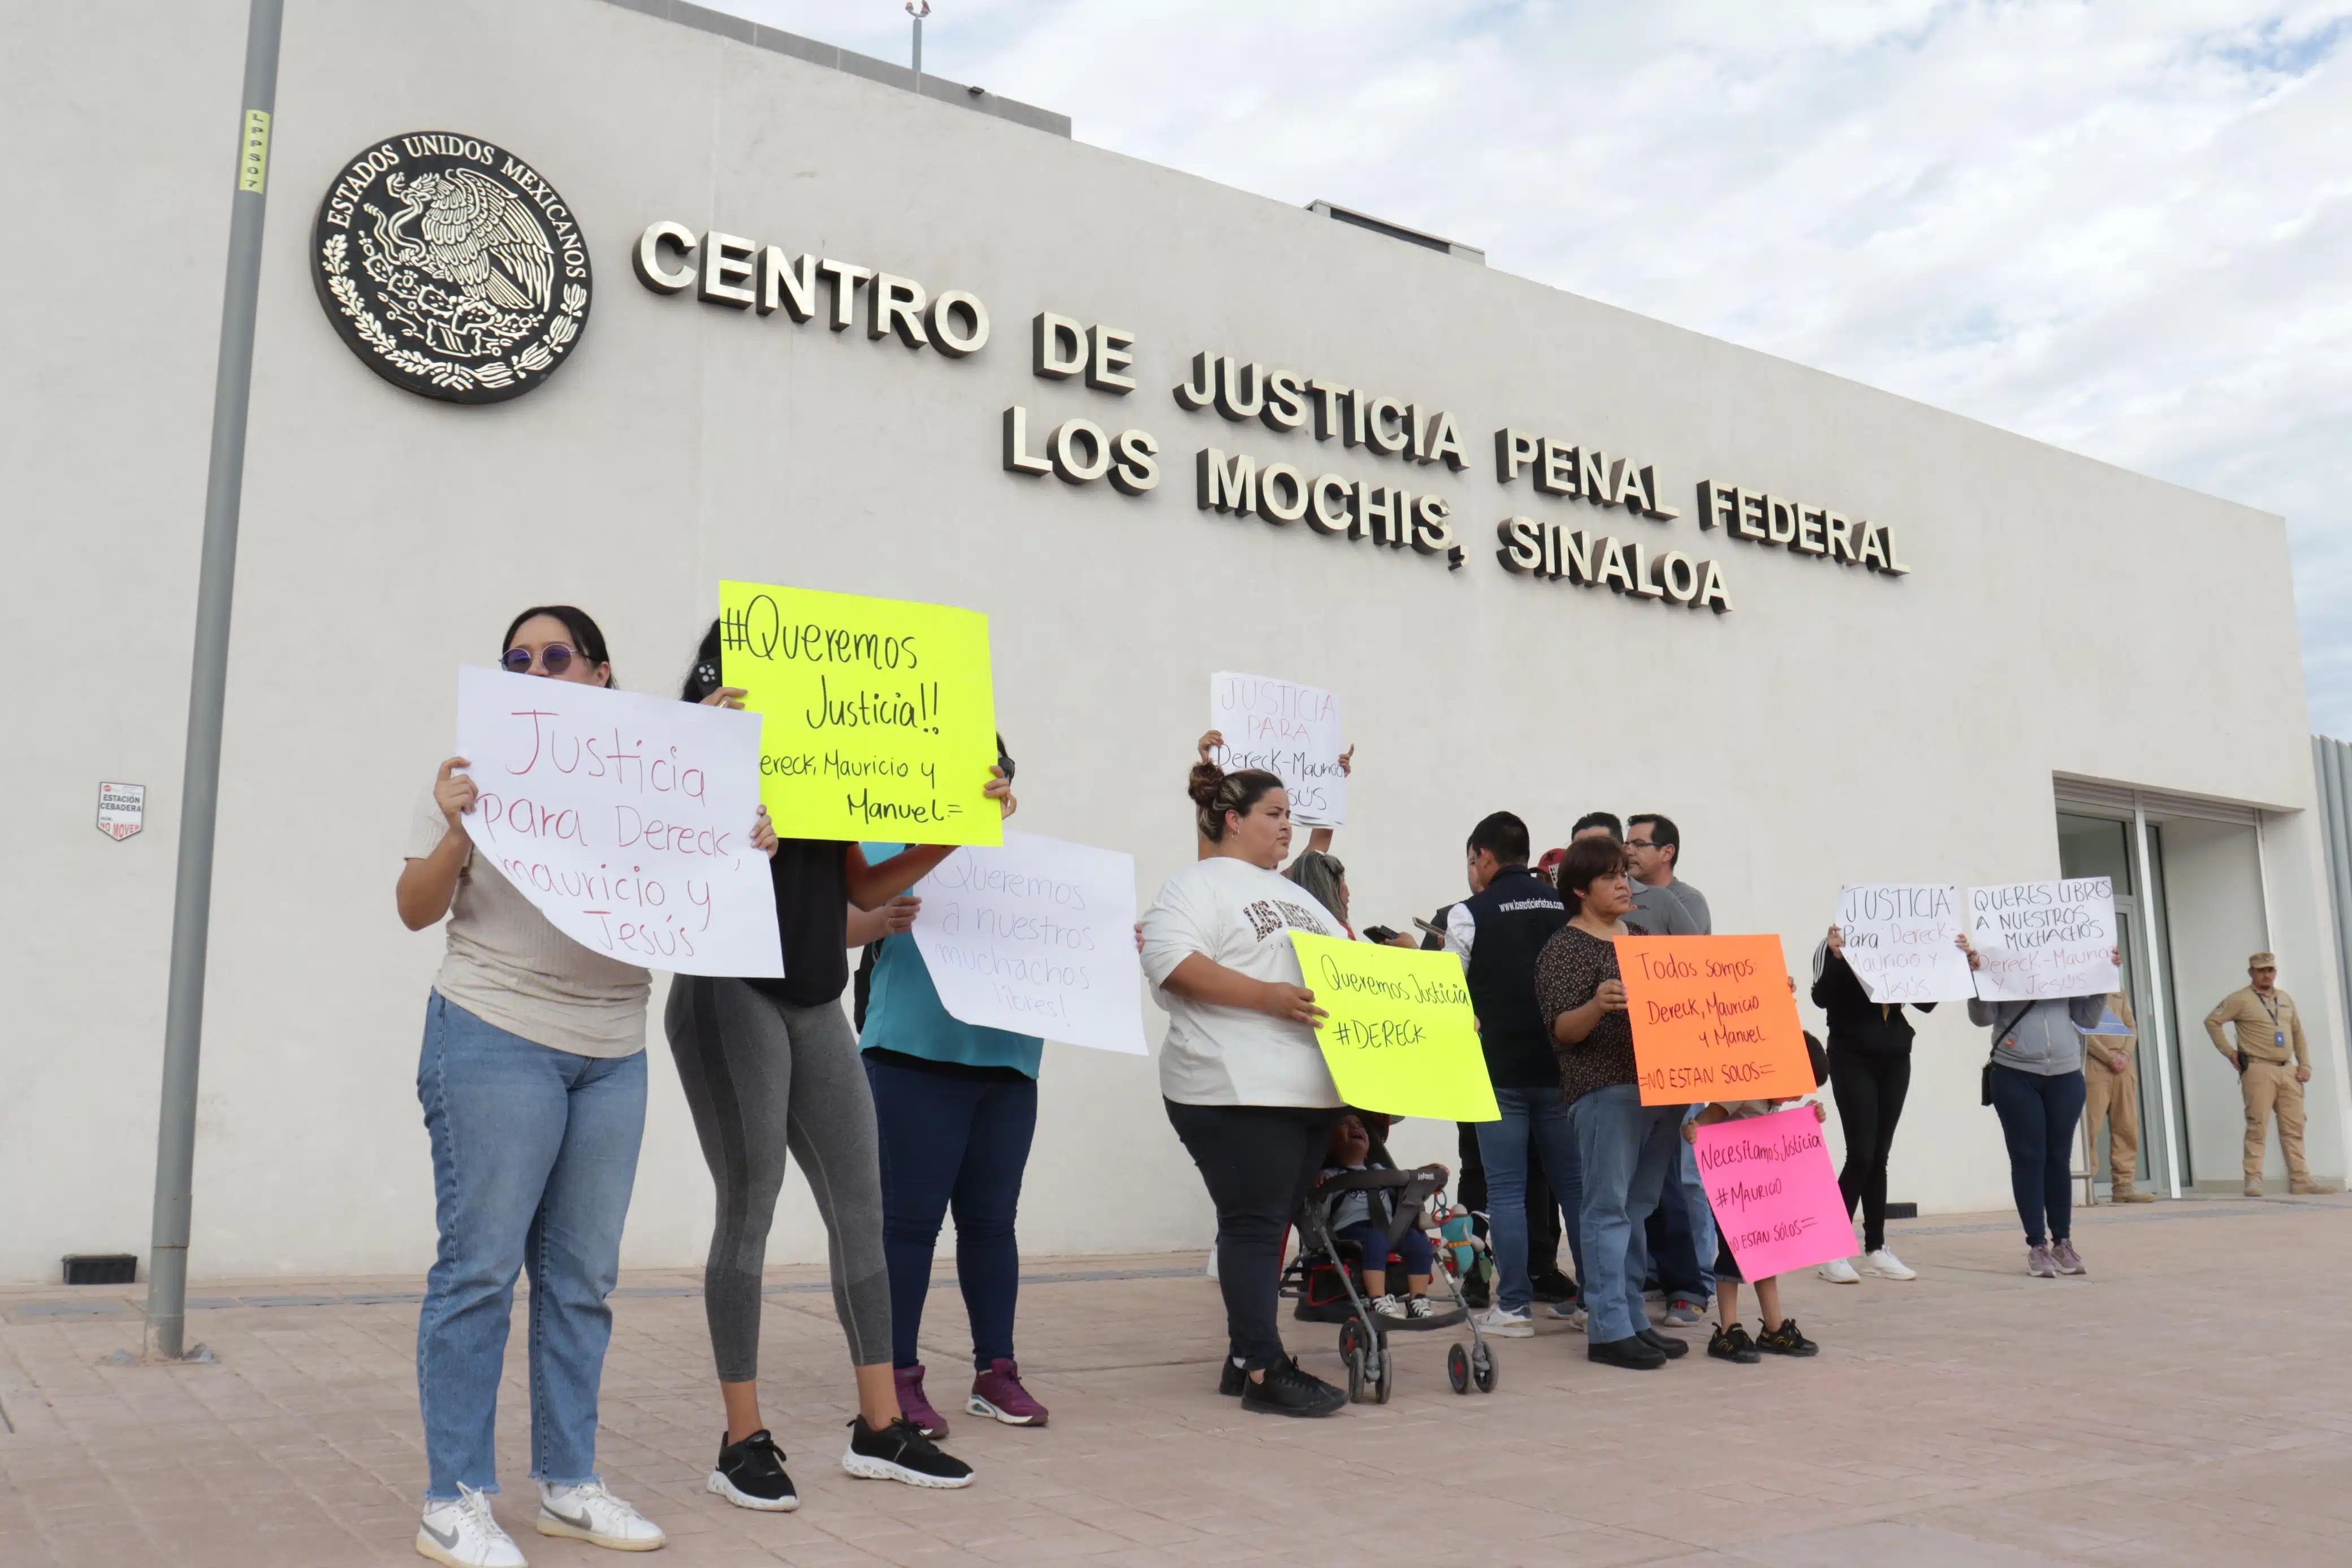 Manifestación en el Centro de Justicia Penal de Los Mochis para pedir la liberación de tres jovenes que fueron detenididos en Sonora presuntamente transportando extranjeros